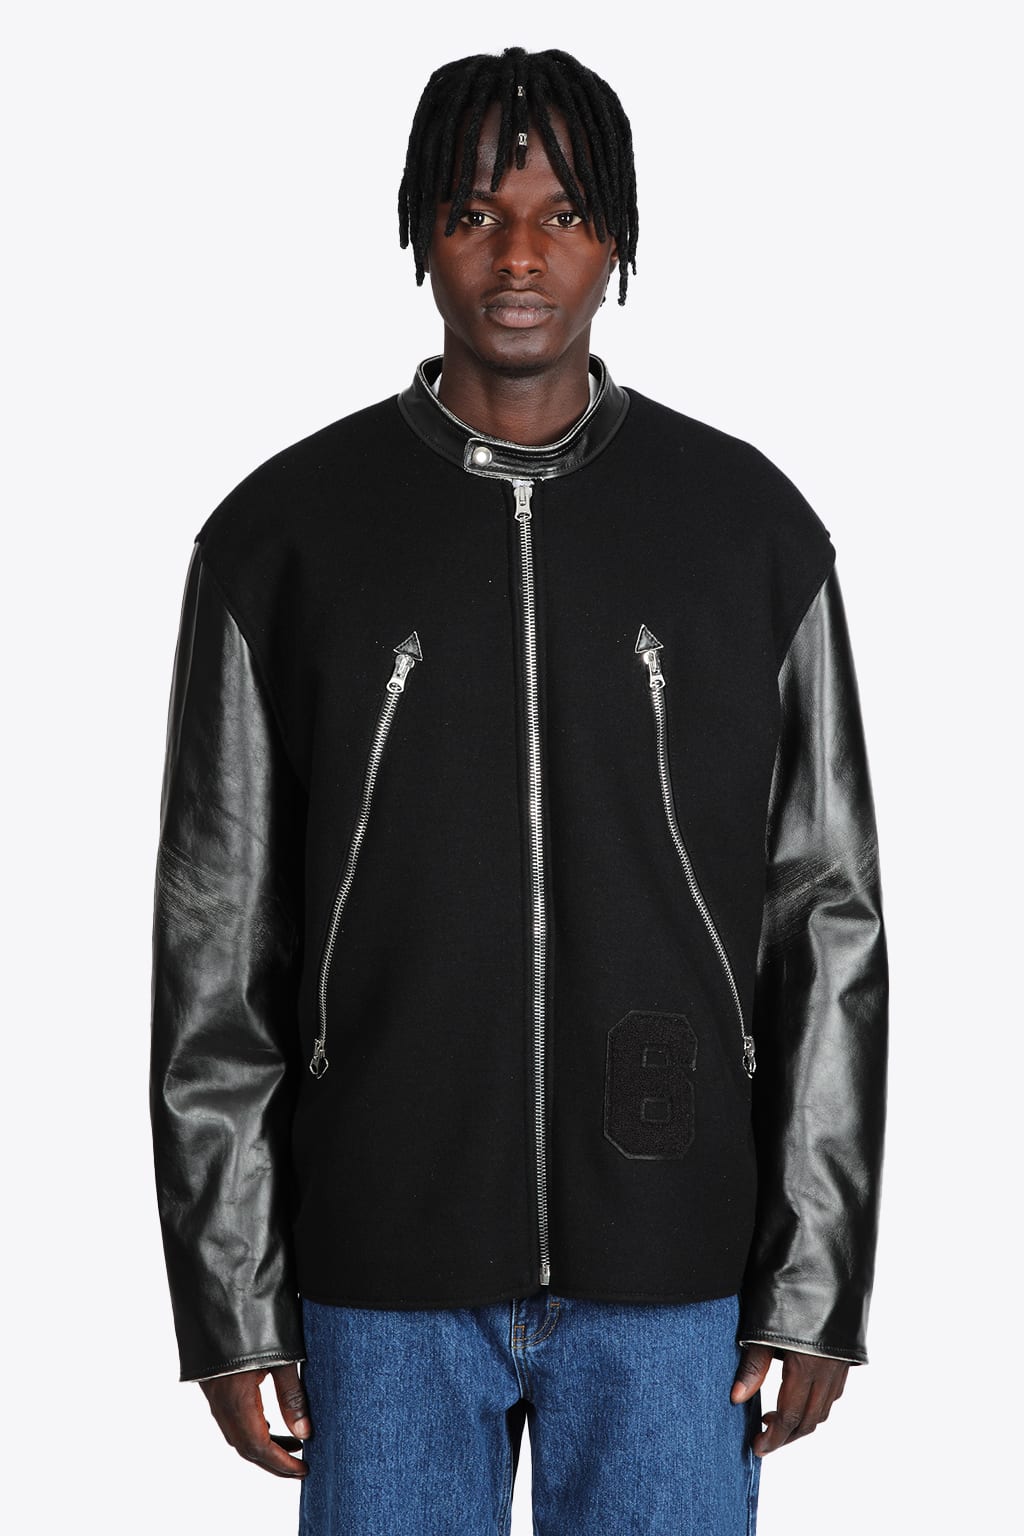 MM6 Maison Margiela Kaban Mm6 Black felted wool jacket with leather sleeves - Kaban